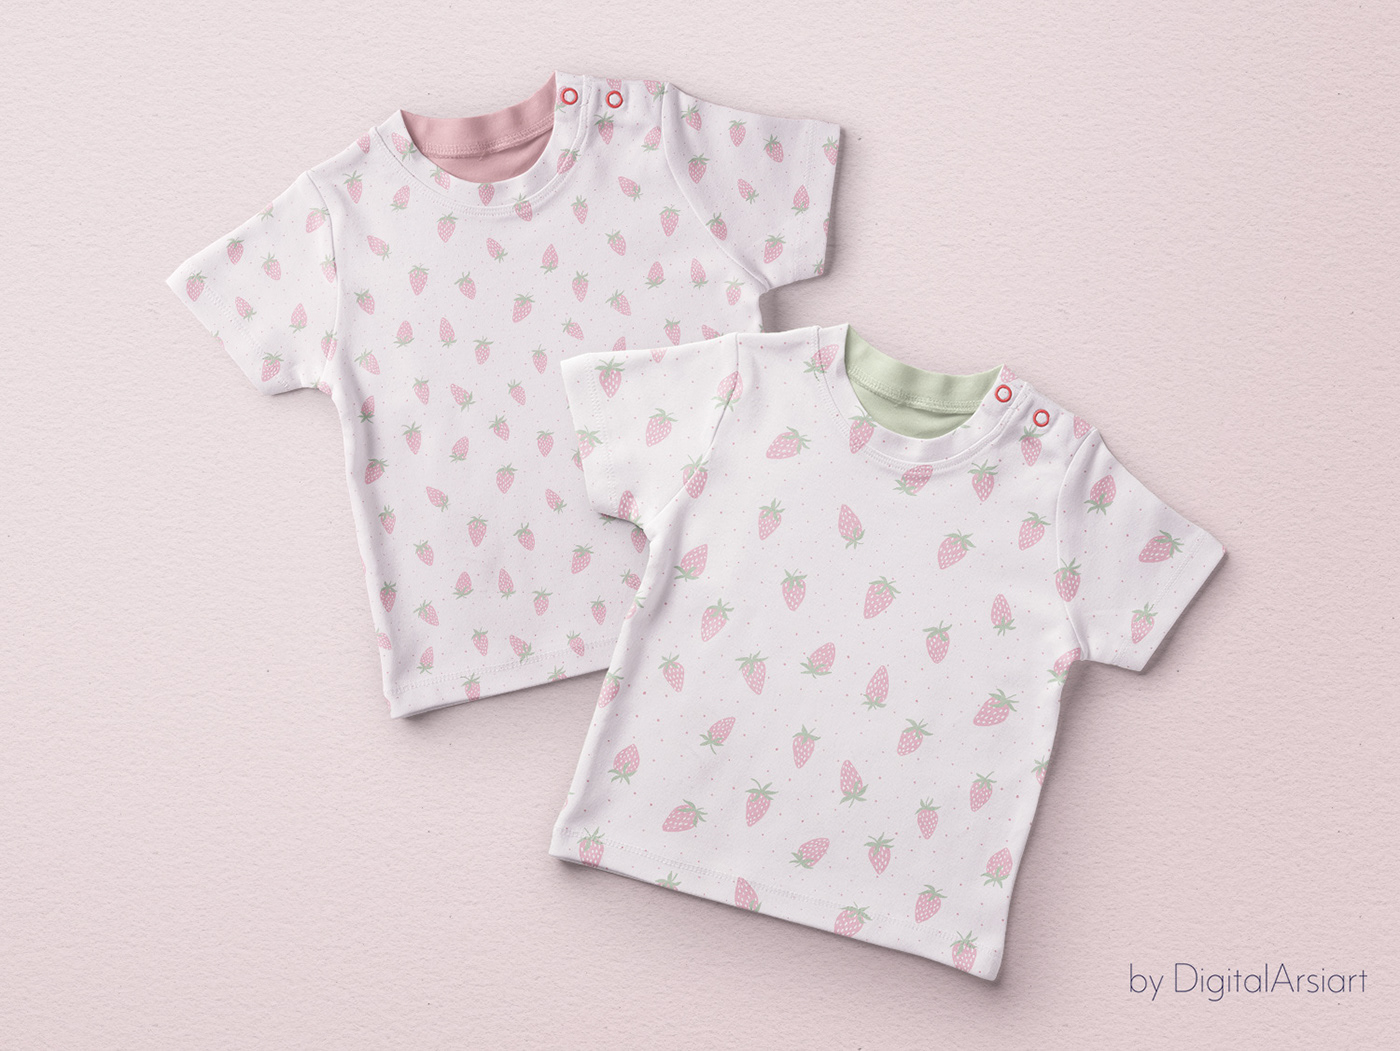 Pink strawberry pattern. Cute baby girl seamless pattern.